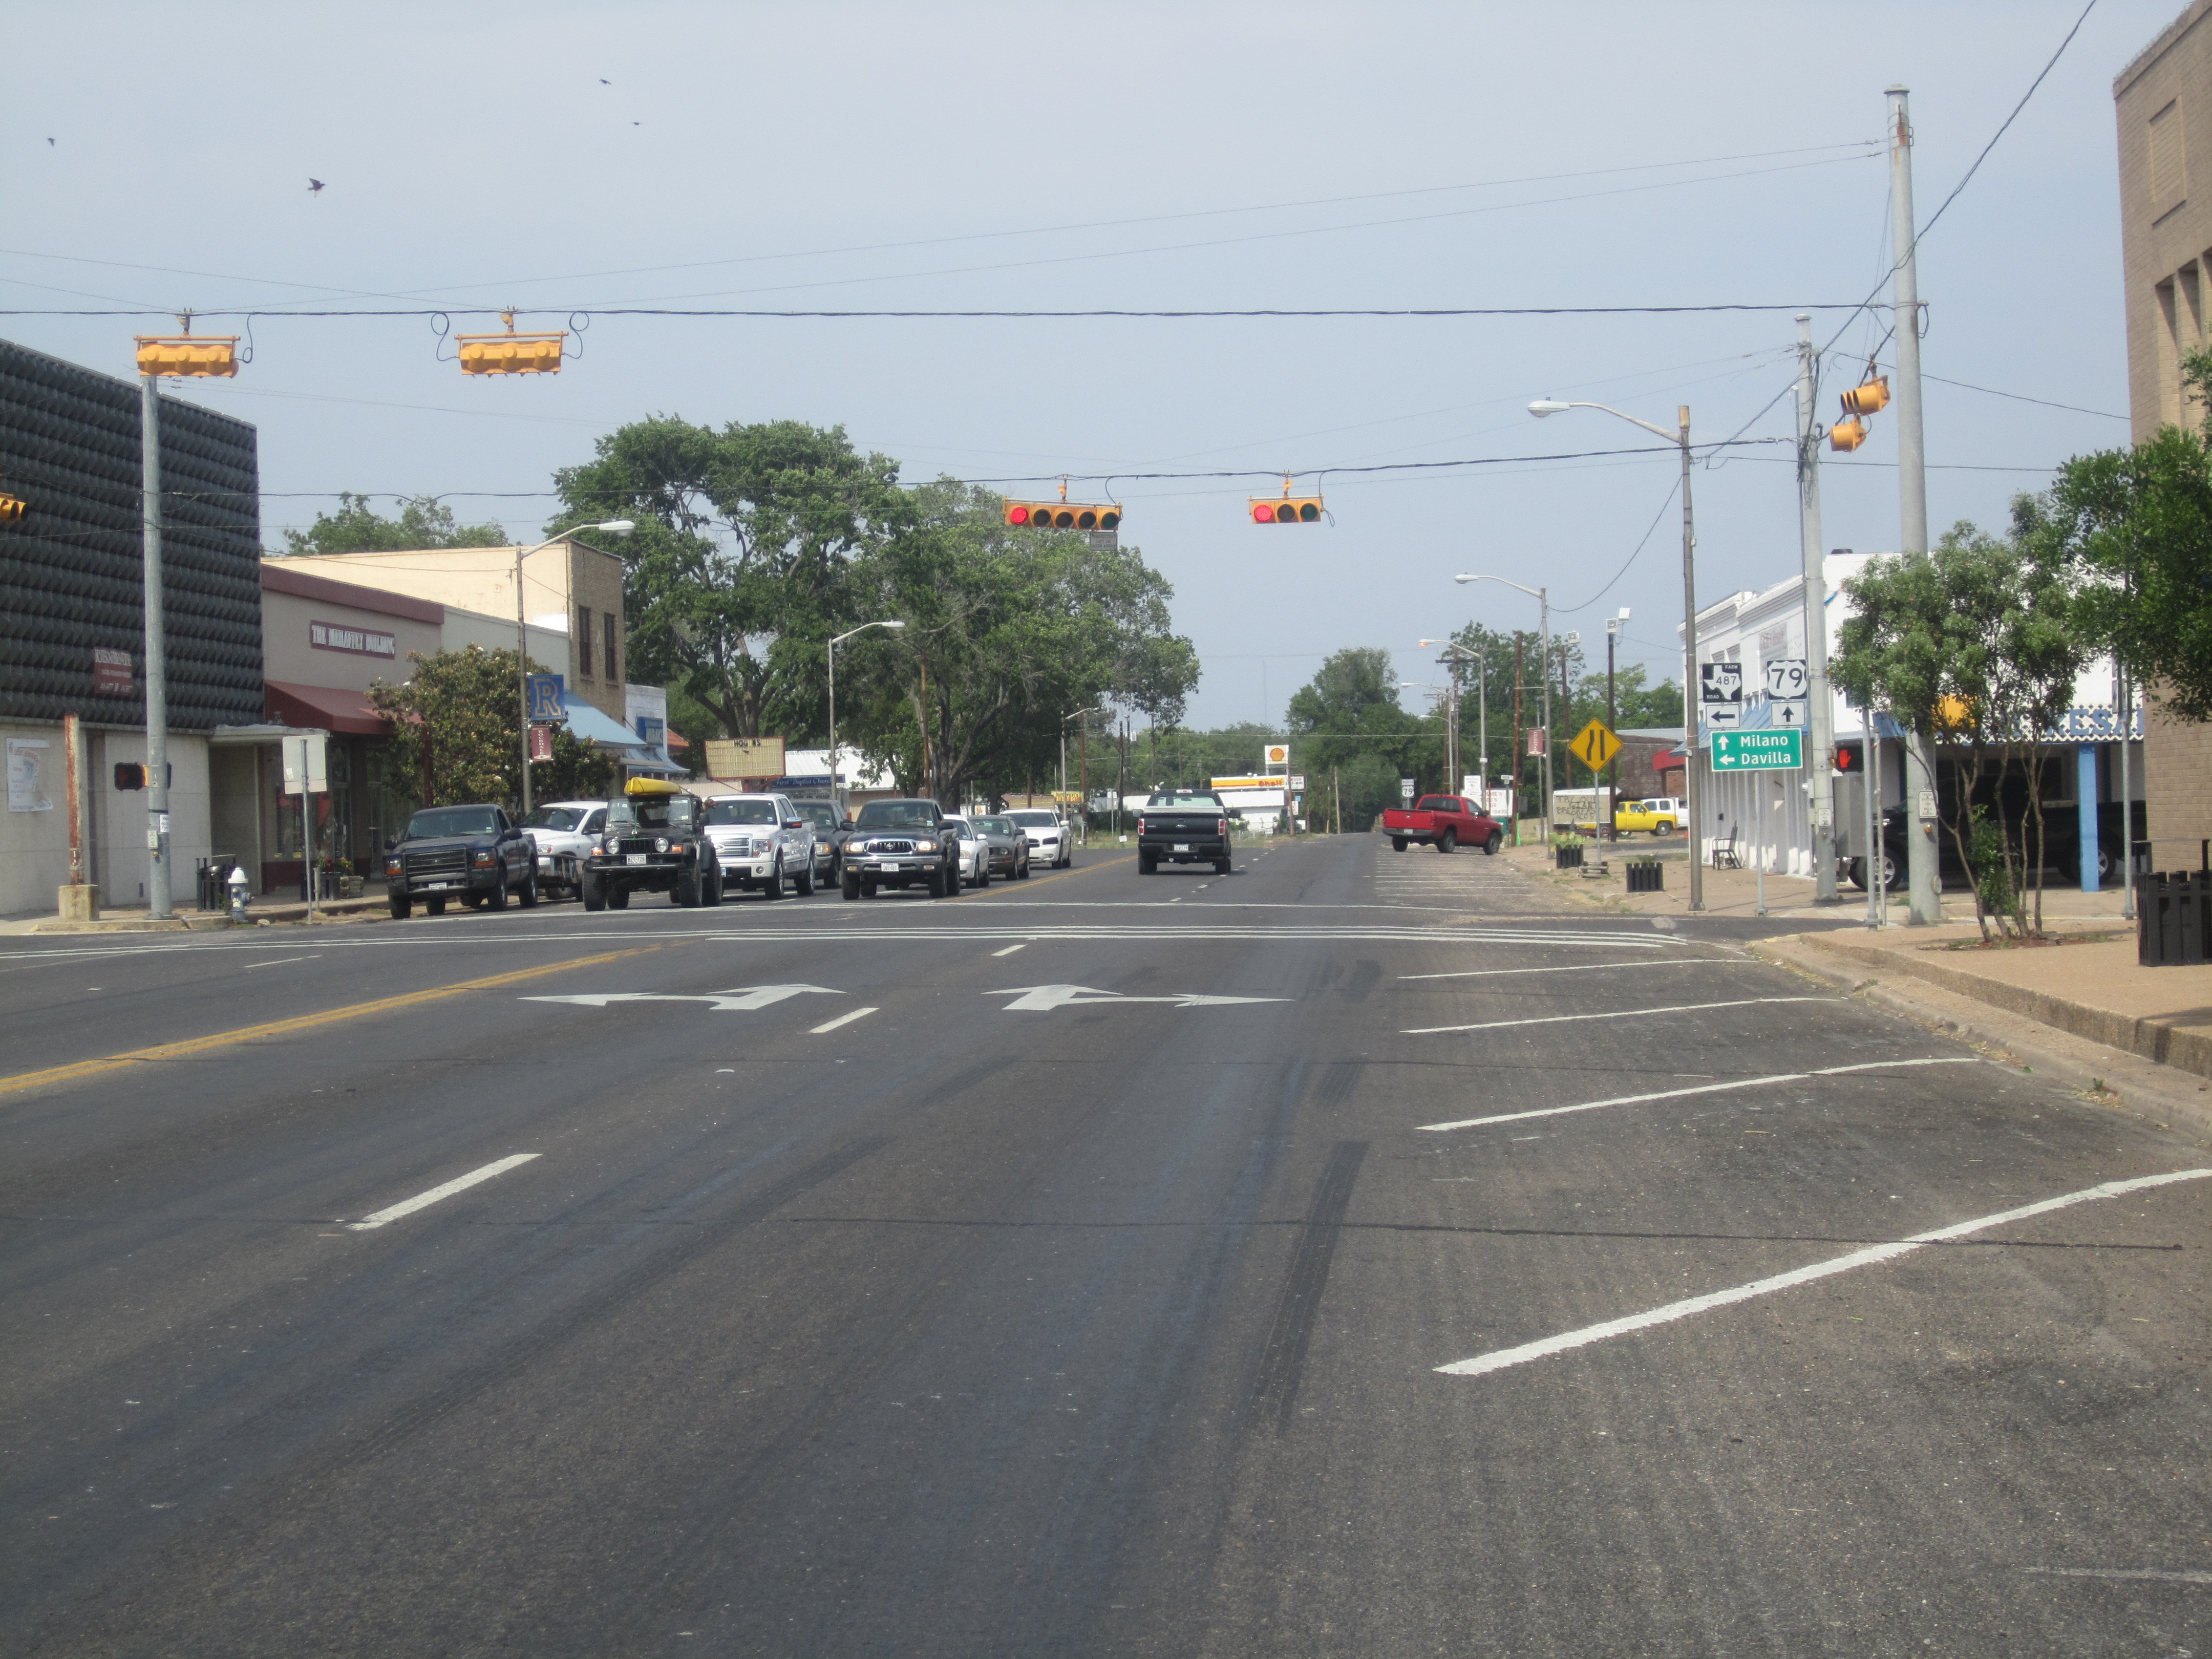 File:US Route 79 adalah jalan utama Rockdale, TX IMG 2255.JPG - Wikimedia Commons